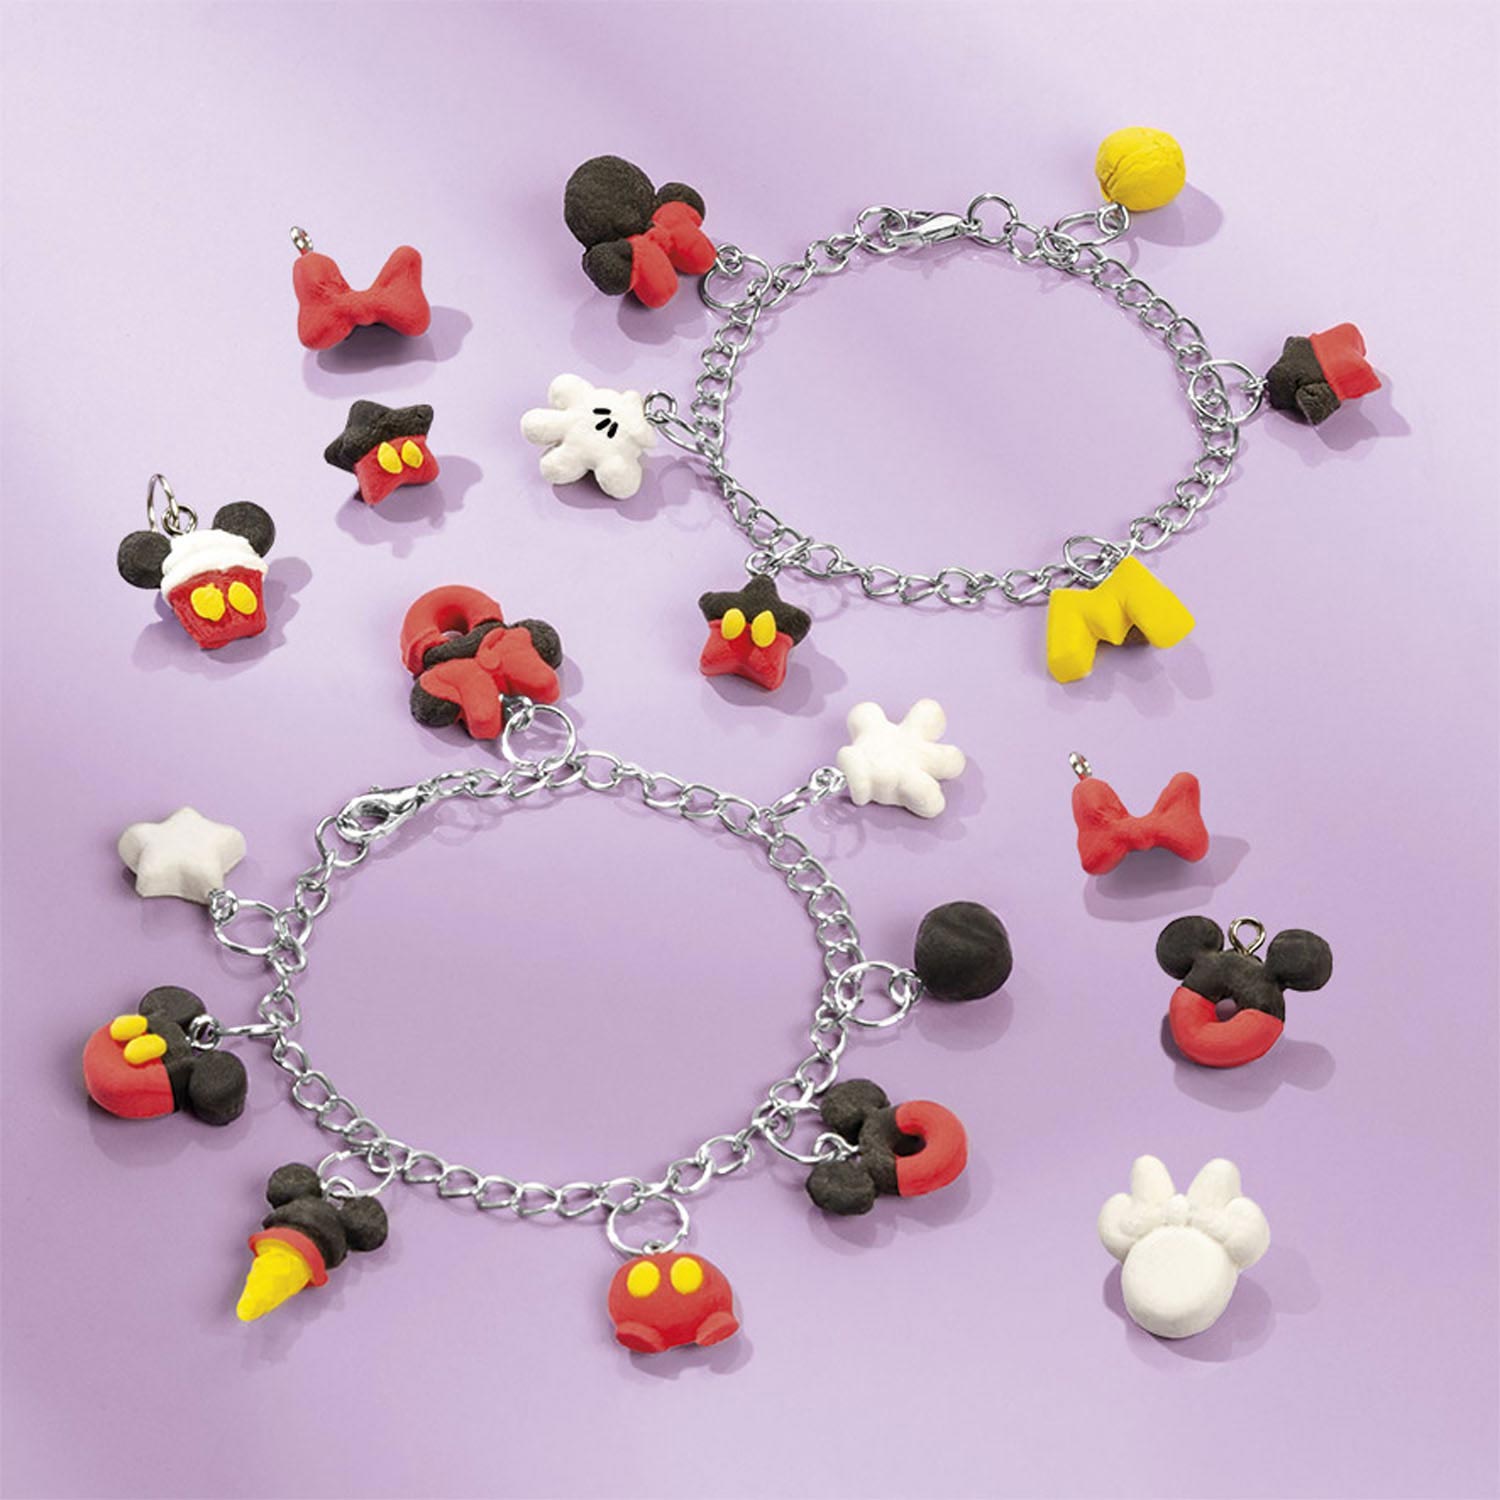 Totum Mickey Mouse - Confection de bracelets à breloques